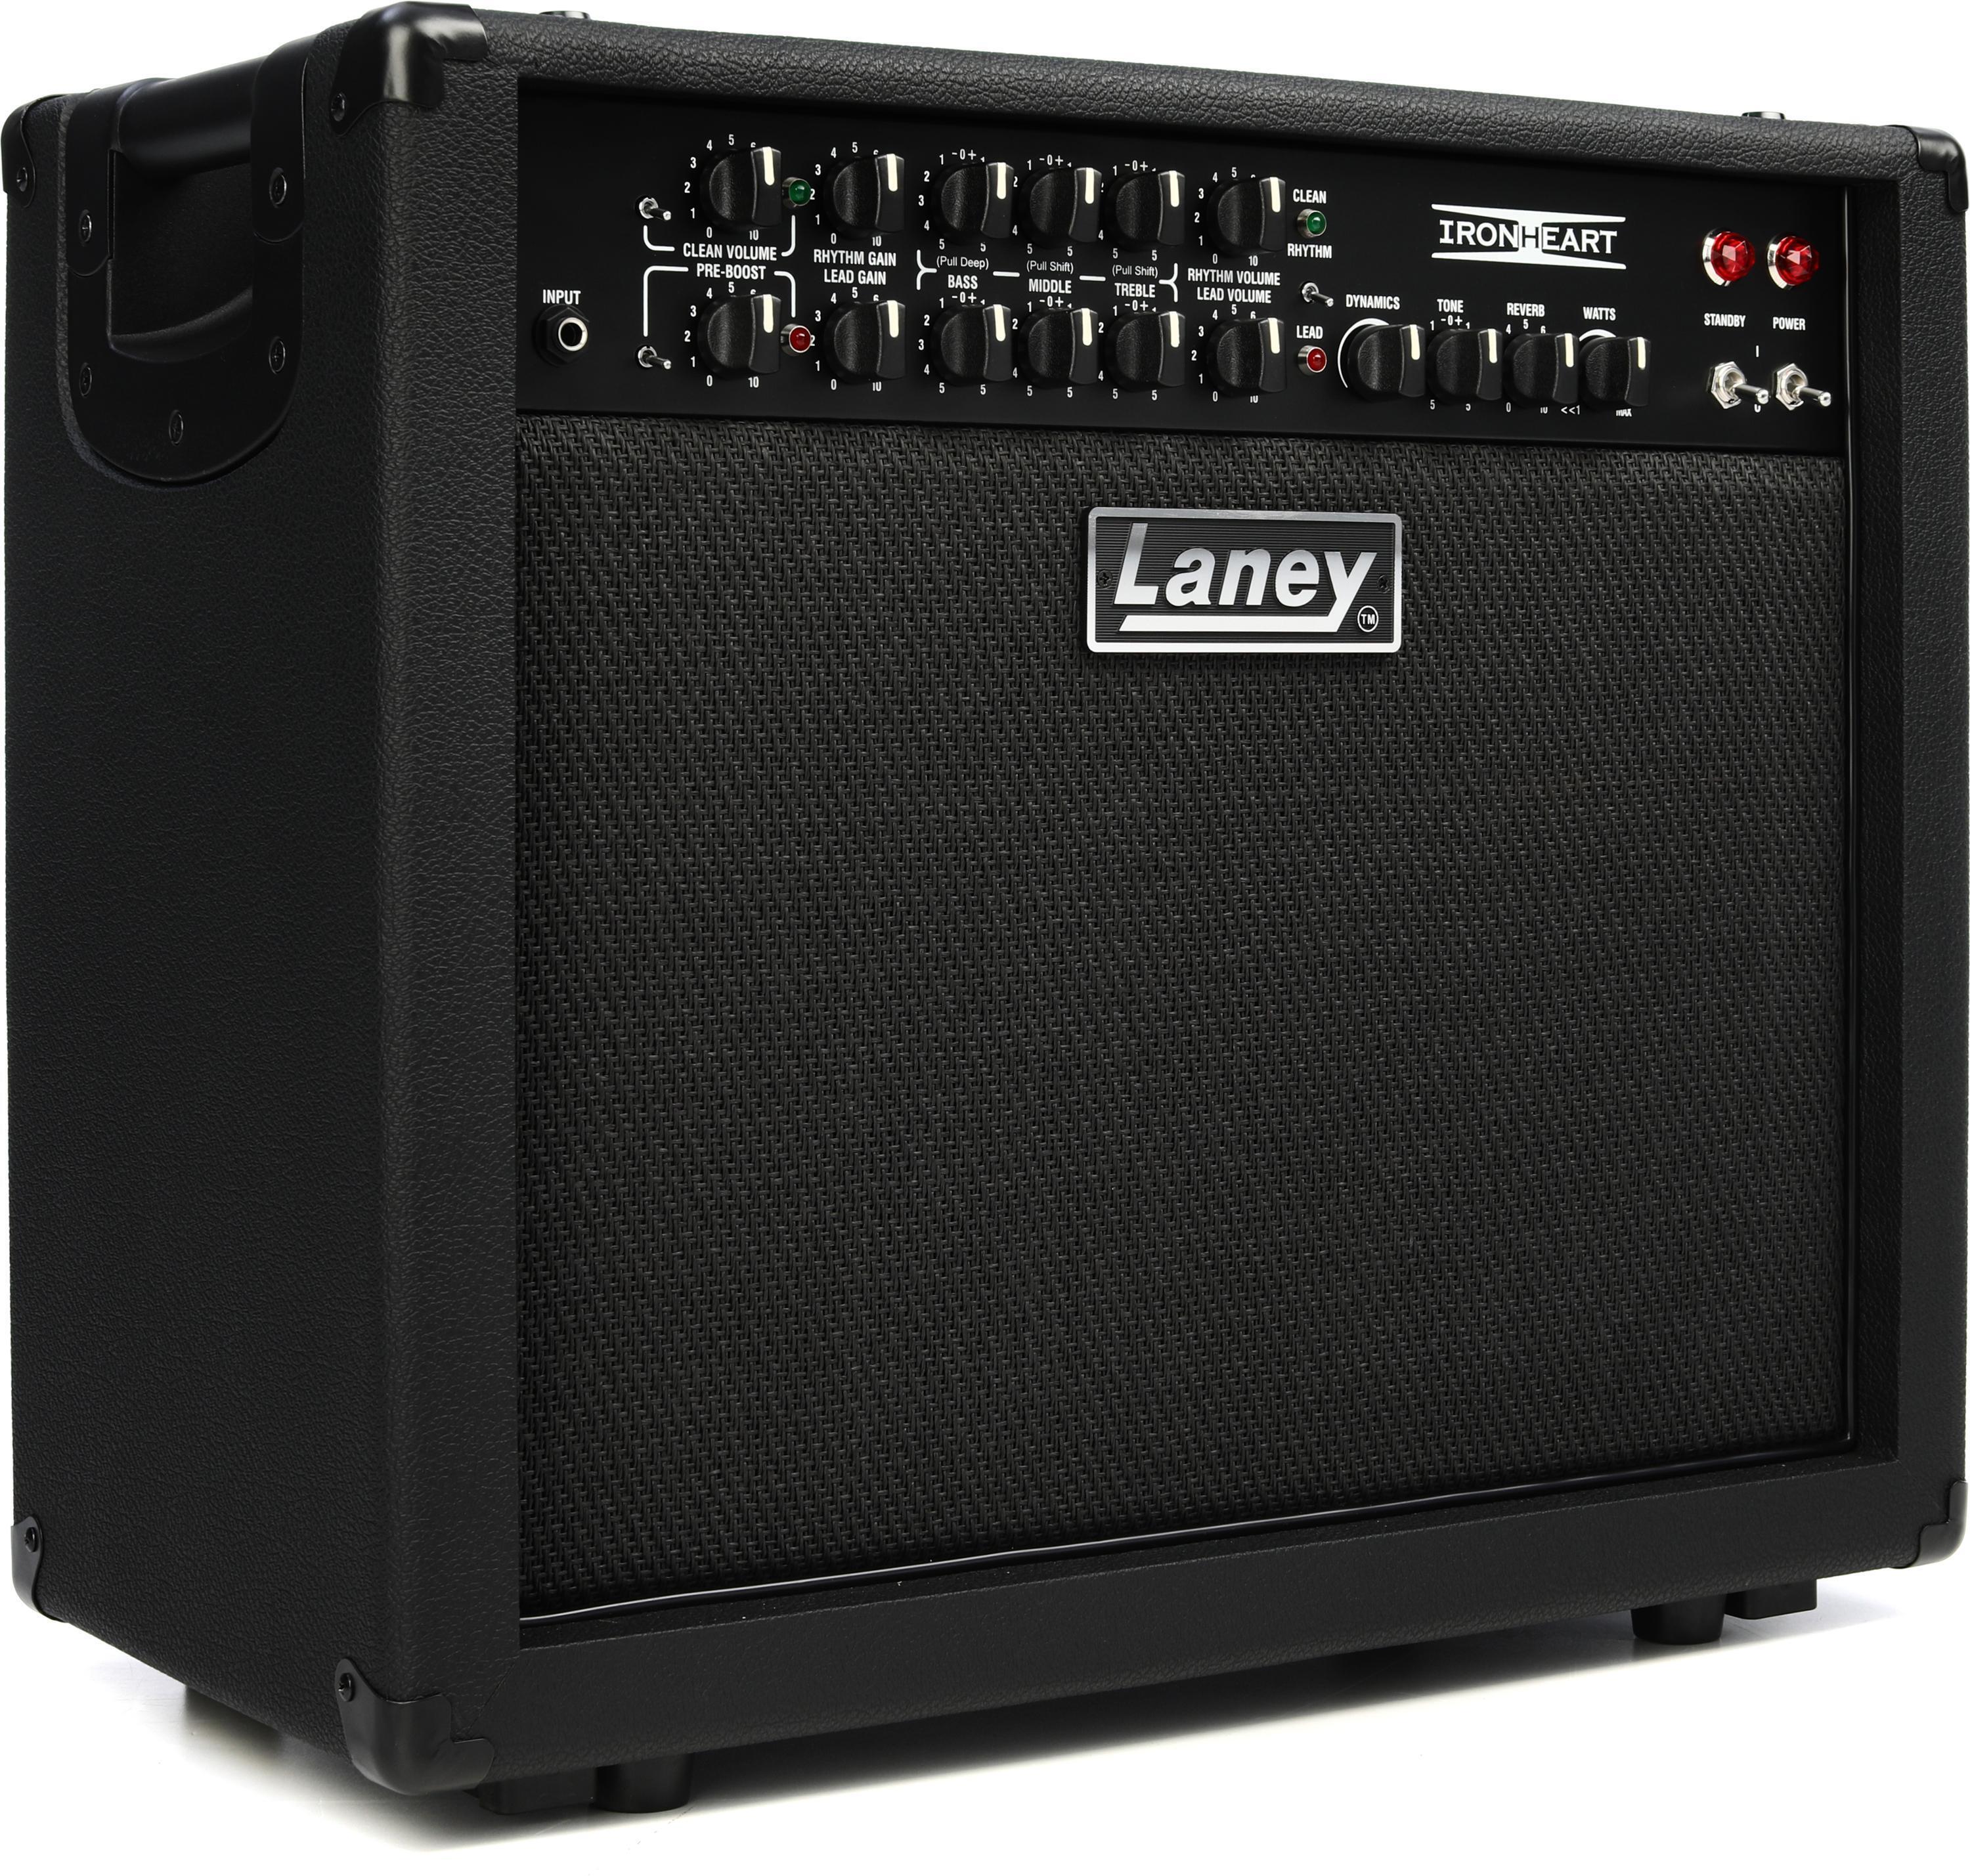 Laney Ironheart IRT30-112 1 x 12-inch 30-watt Combo Amp